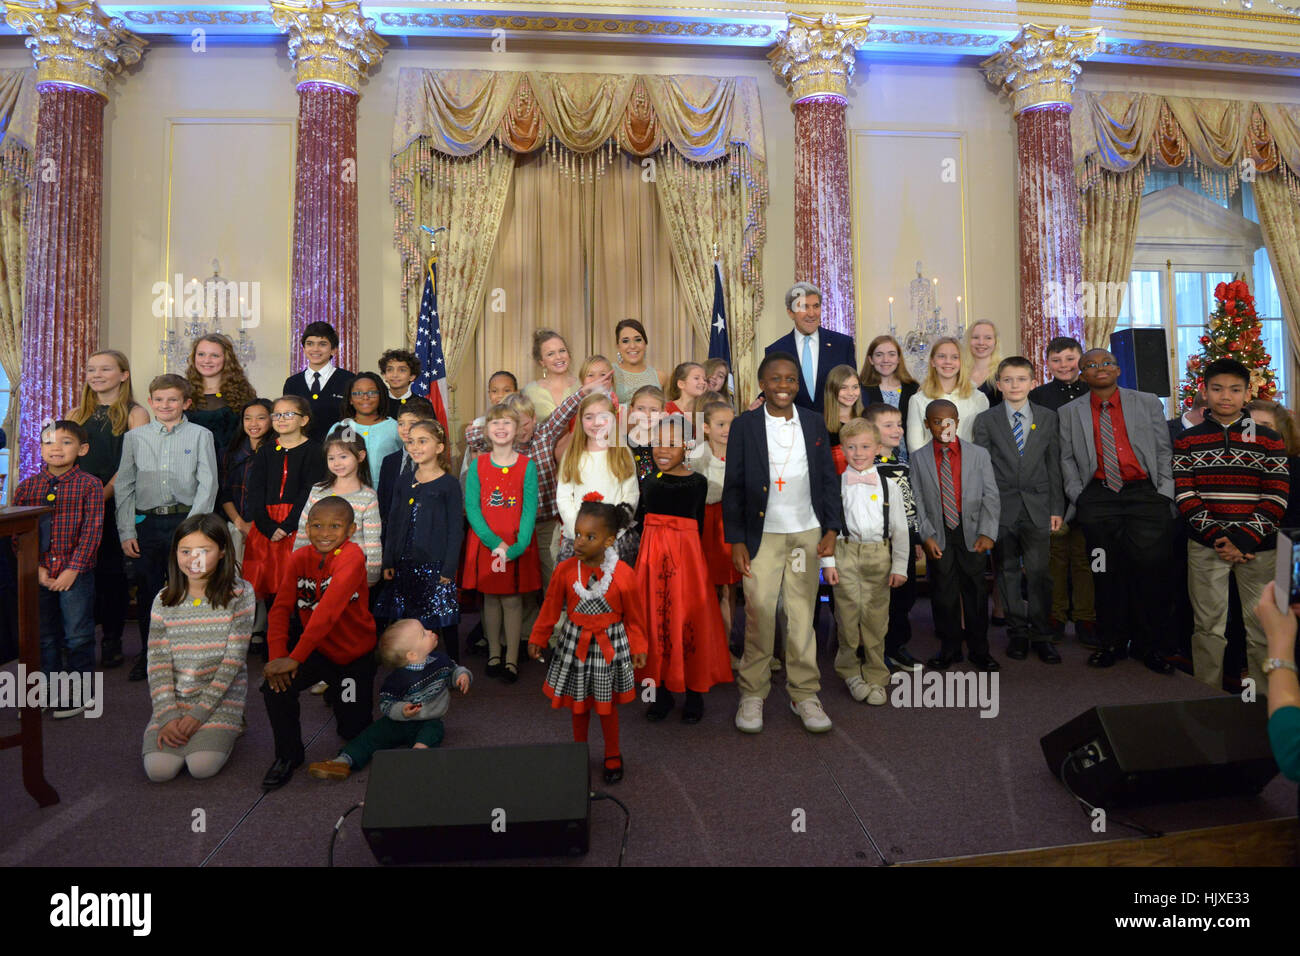 Le secrétaire d'Etat John Kerry pose pour une photo avec des enfants d'employés du gouvernement des États-Unis sur l'affectation à des postes non accompagnés dans le monde entier à l'assemblée annuelle de diplomatie de maison pour les vacances à la réception, le Département d'État des États-Unis à Washington, D.C., le 13 décembre 2016. Banque D'Images